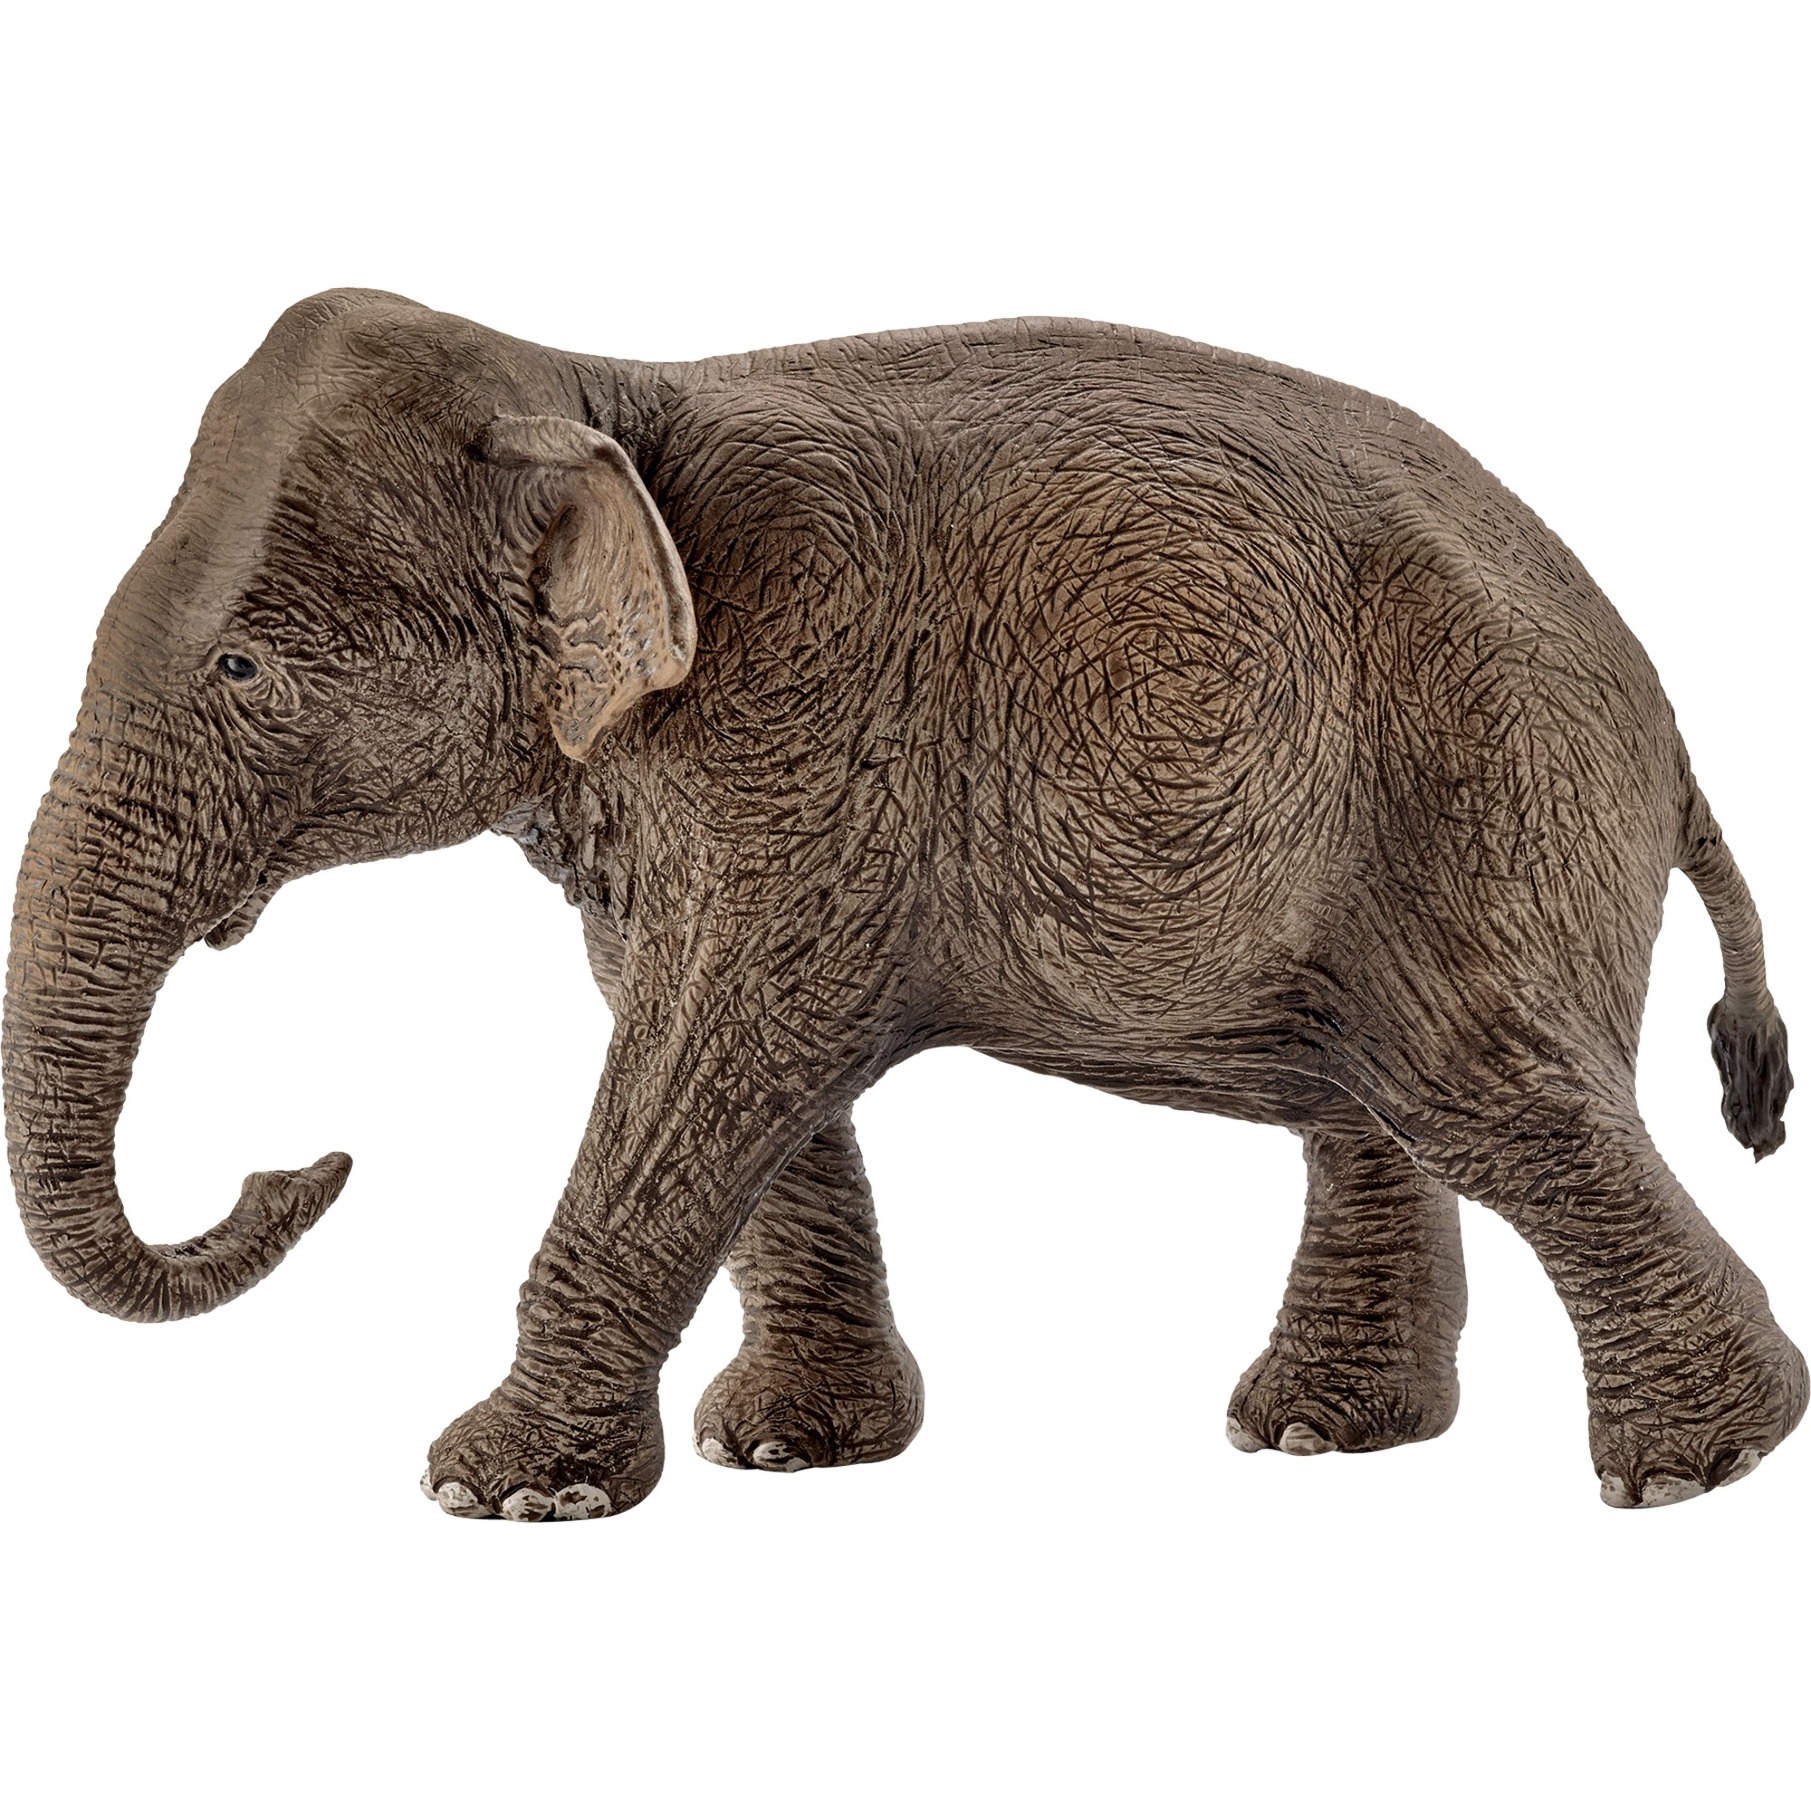 Image of Alternate - Asiatische Elefantenkuh, Spielfigur online einkaufen bei Alternate